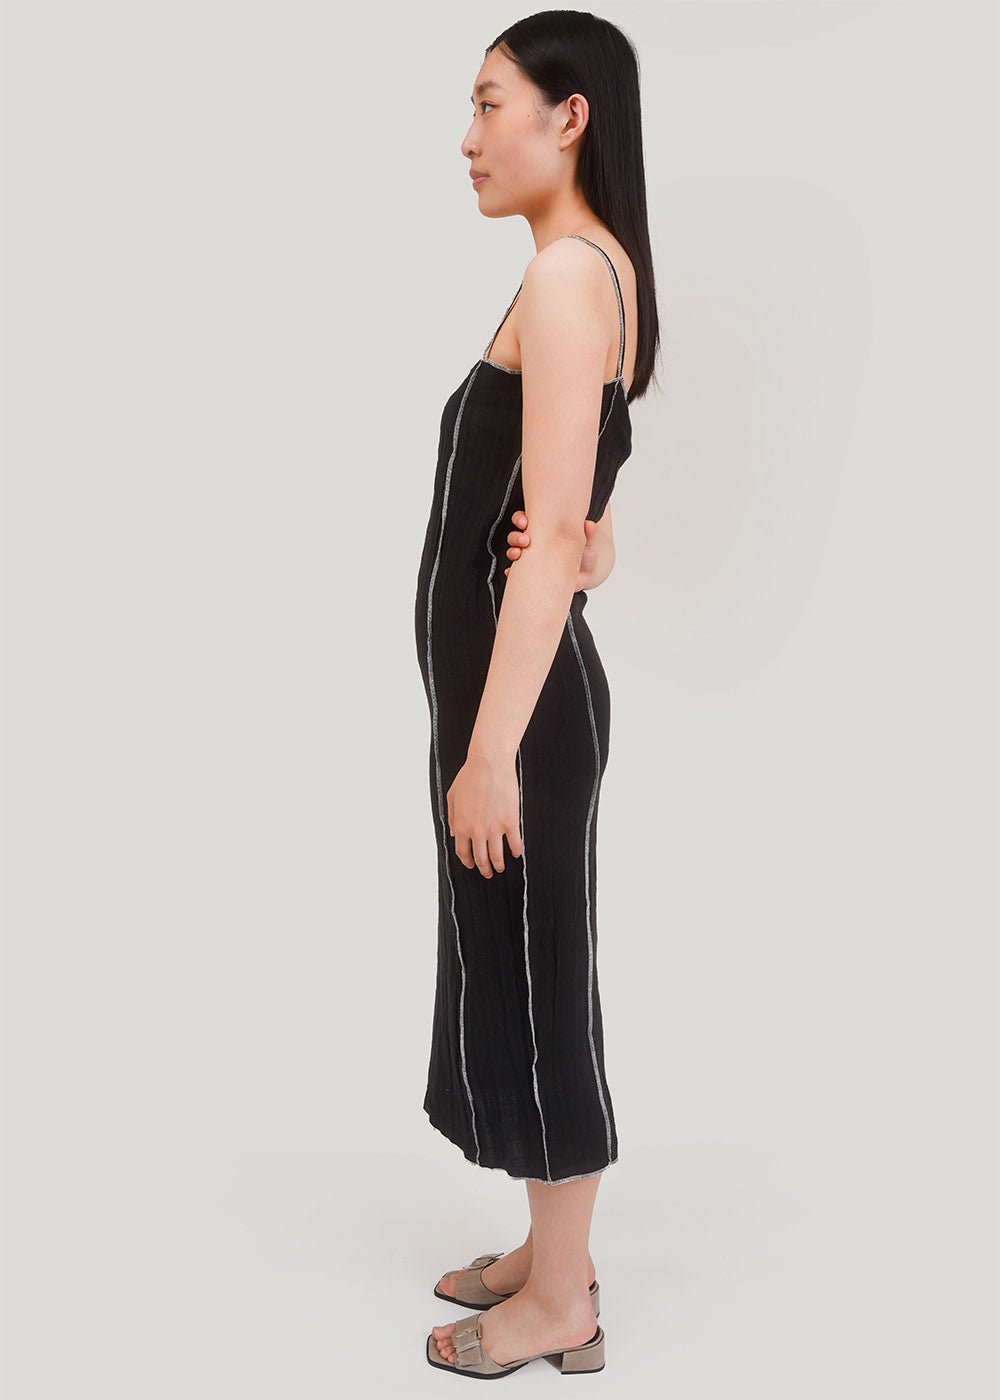 Baserange Black Shok Slip Dress - New Classics Studios Sustainable Ethical Fashion Canada